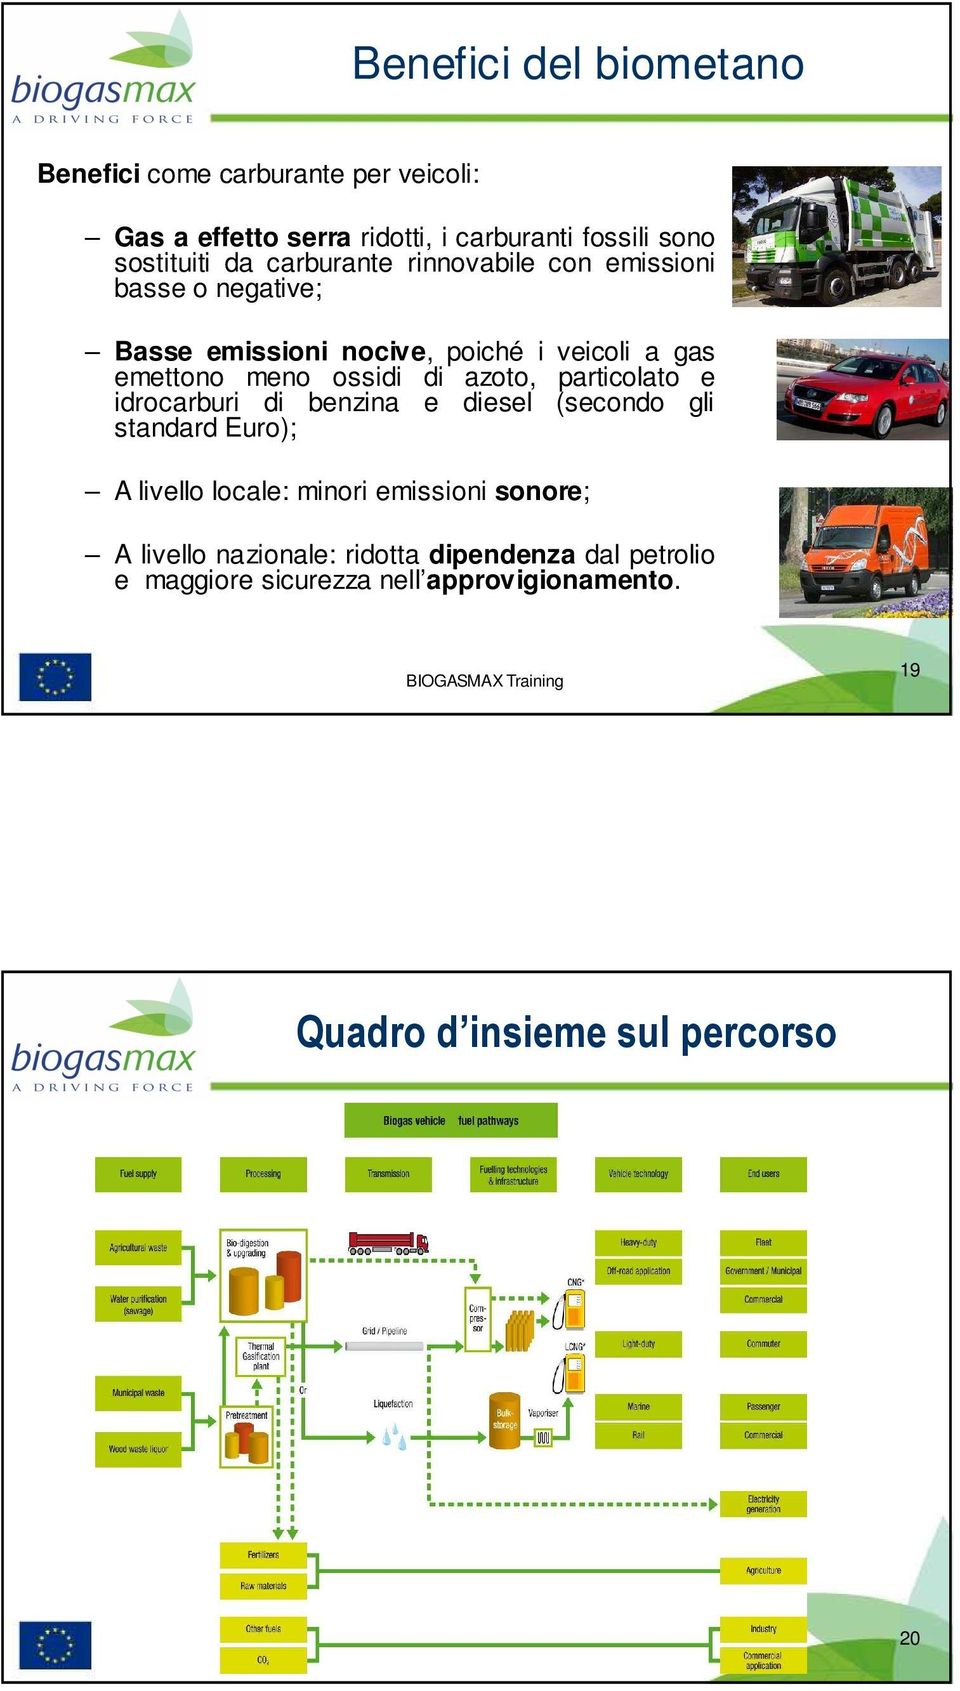 azoto, particolato e idrocarburi di benzina e diesel (secondo gli standard Euro); A livello locale: minori emissioni sonore; A